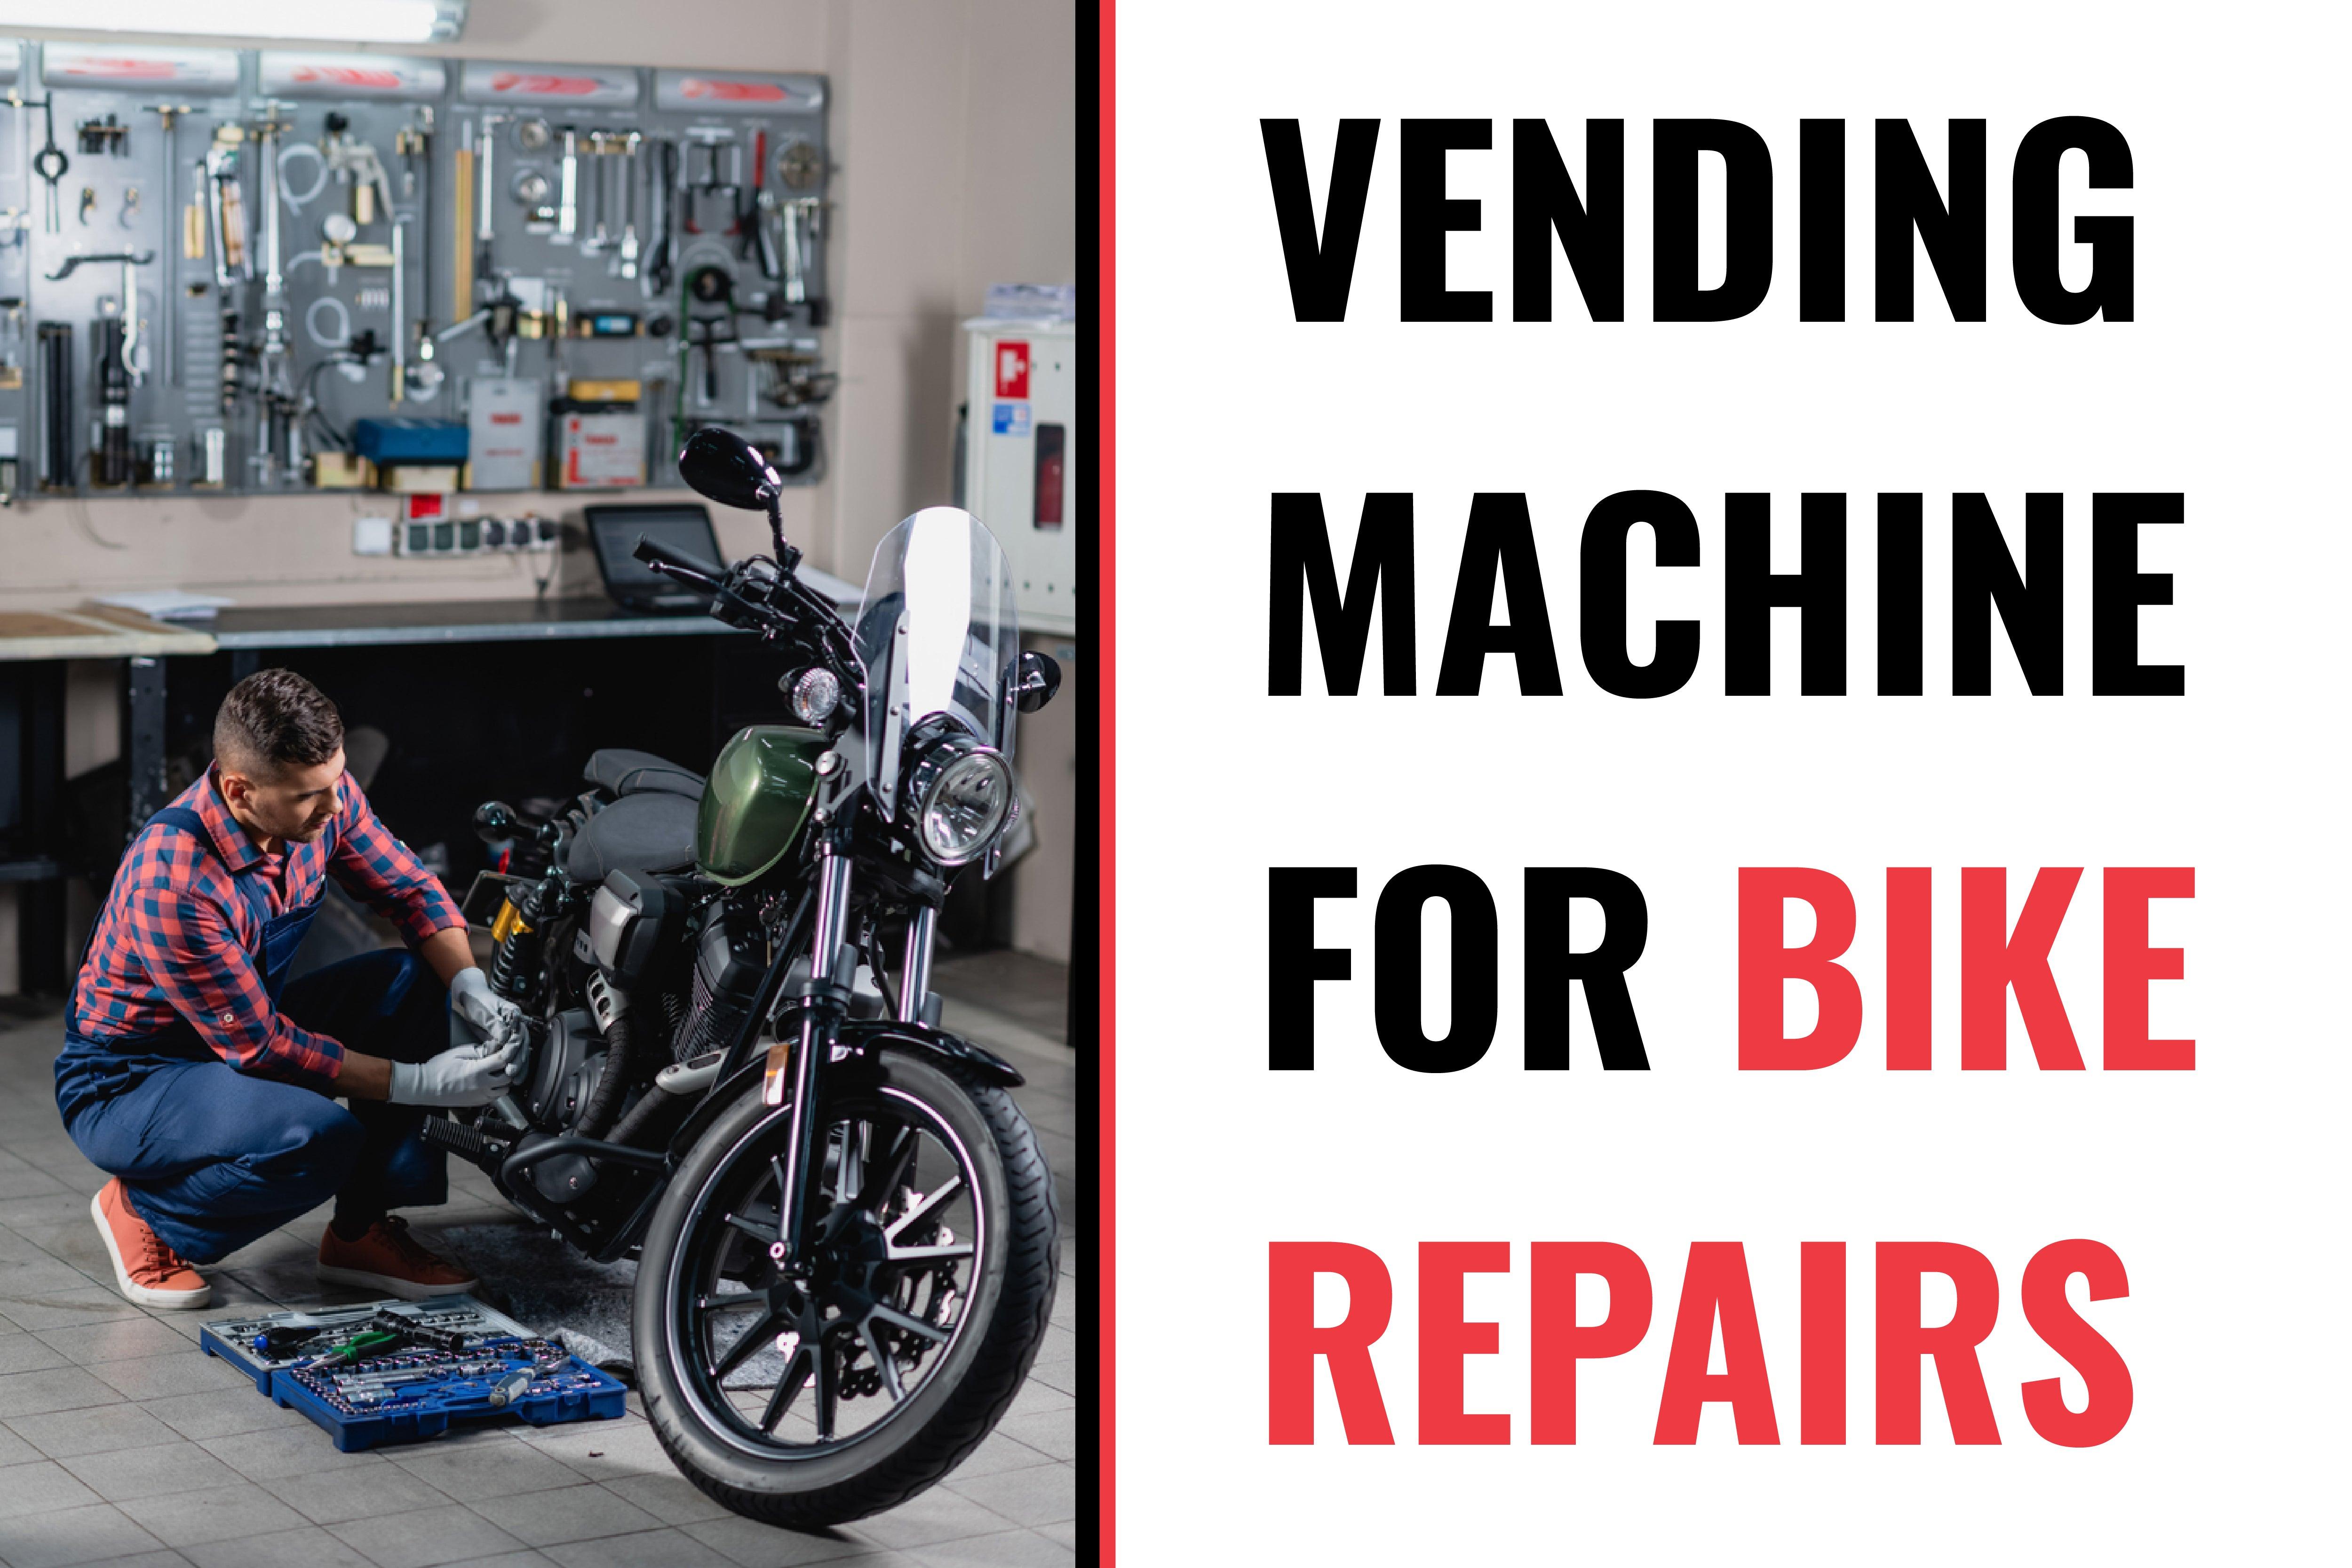 Vending News: Vending Machine for Bike Repairs - Vendnet